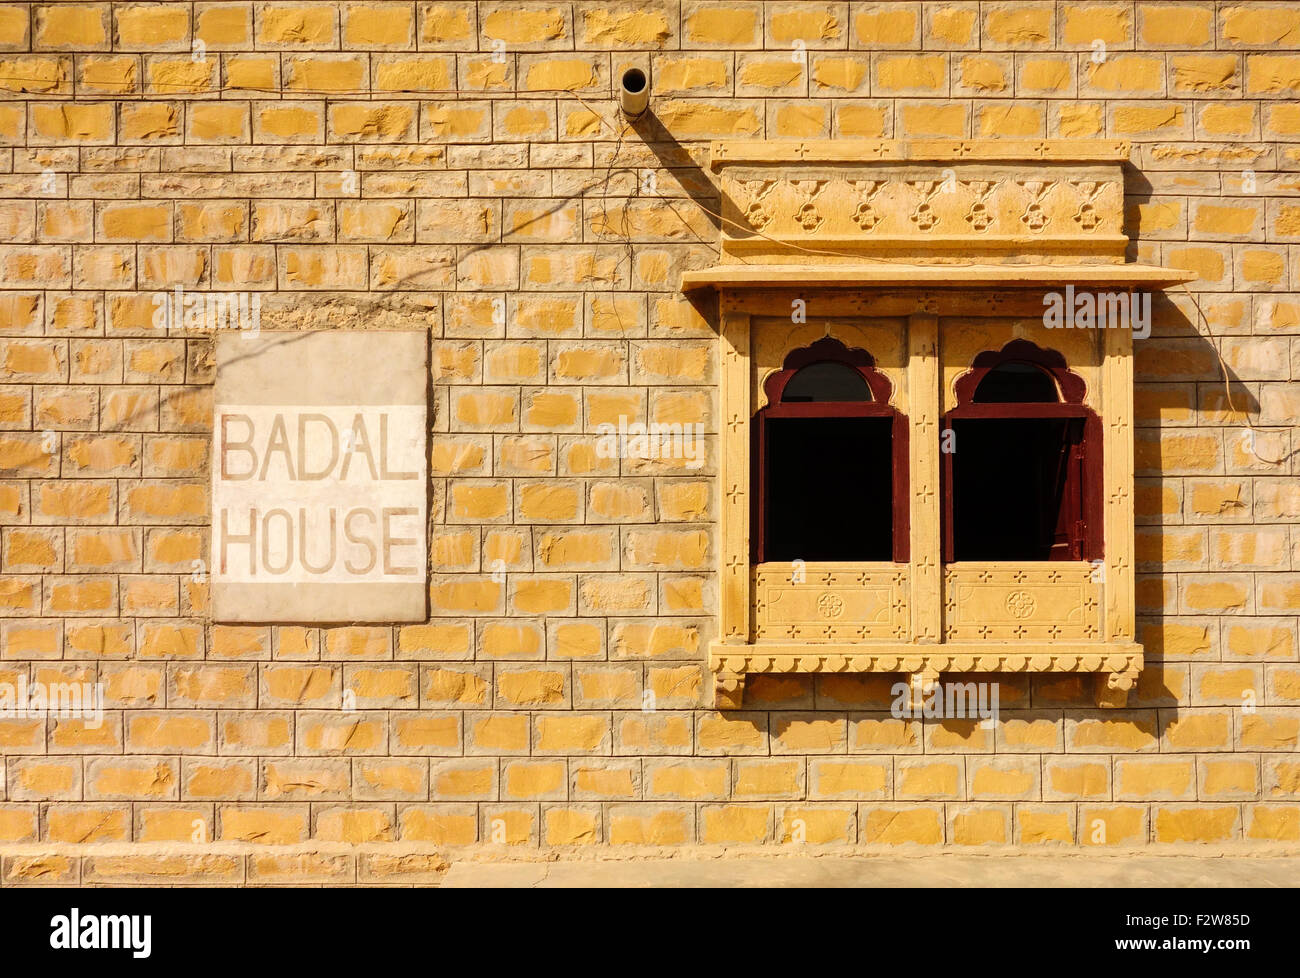 Die Badal Haus des Herrn Badal Singh dient als eine Lodge wo Reisende in Khuri Dorf, Jaisalmer, Rajasthan, Indien übernachten Stockfoto